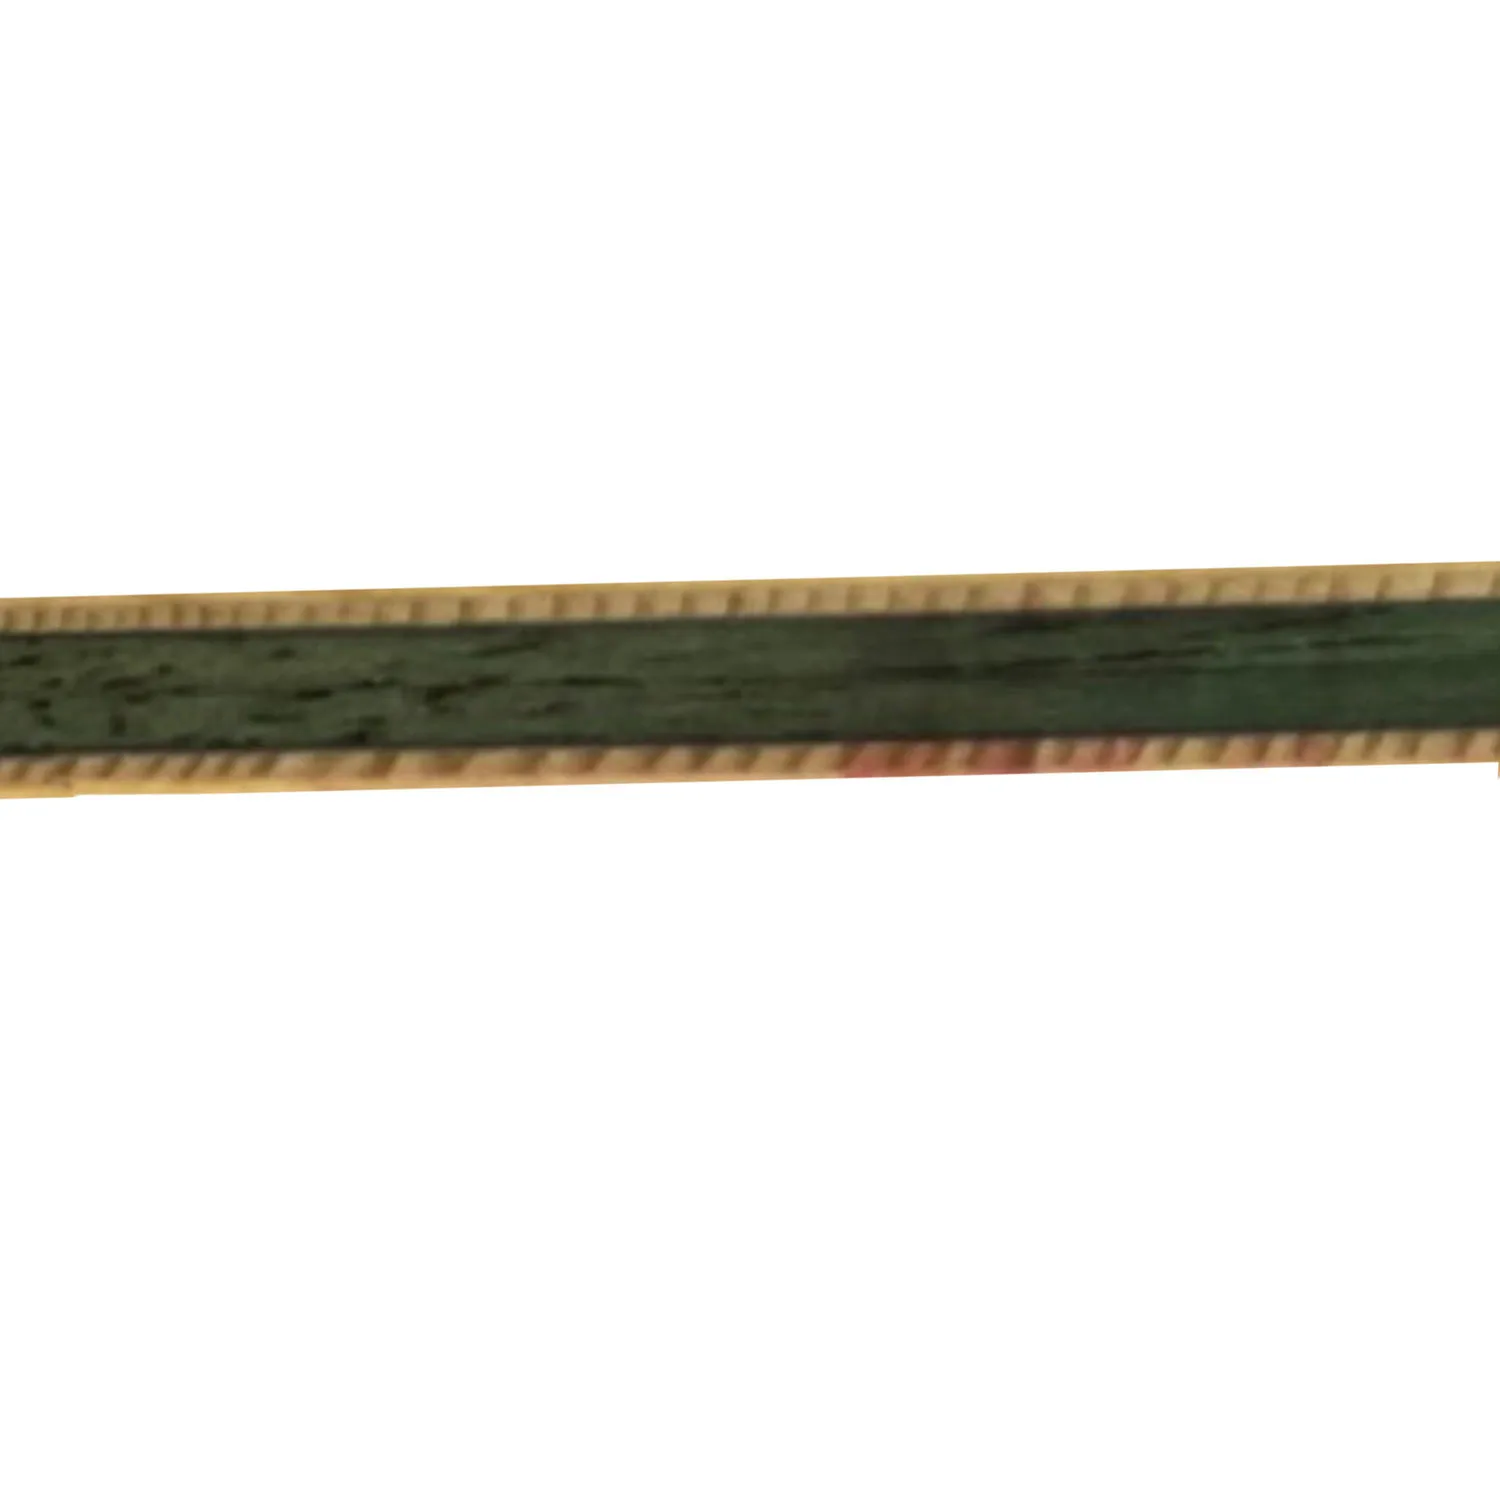 Оригинальная ракетка для настольного тенниса TUTTLE WEALTH RONGHUA Blade, бита для пинг-понга, лопатка 4